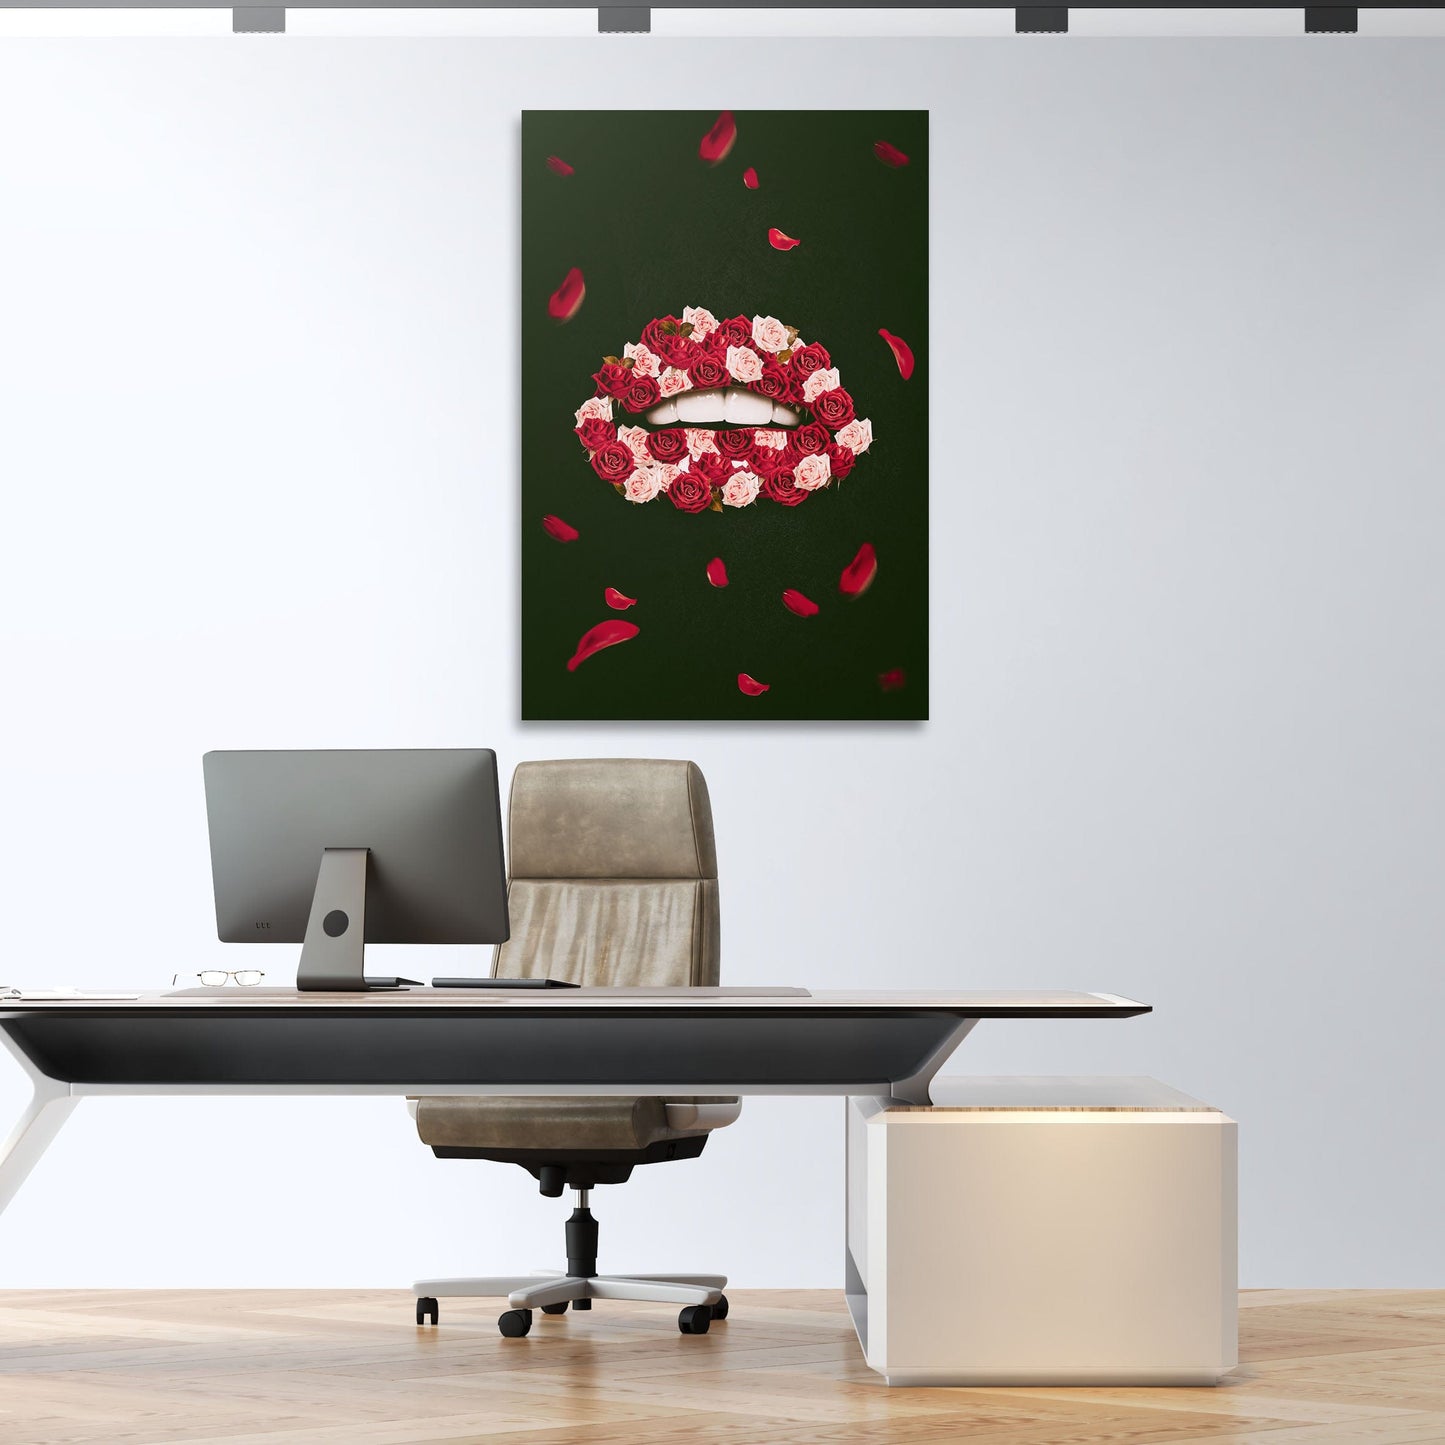 Rose Lips Wall Art | Inspirational Wall Art Motivational Wall Art Quotes Office Art | ImpaktMaker Exclusive Canvas Art Portrait